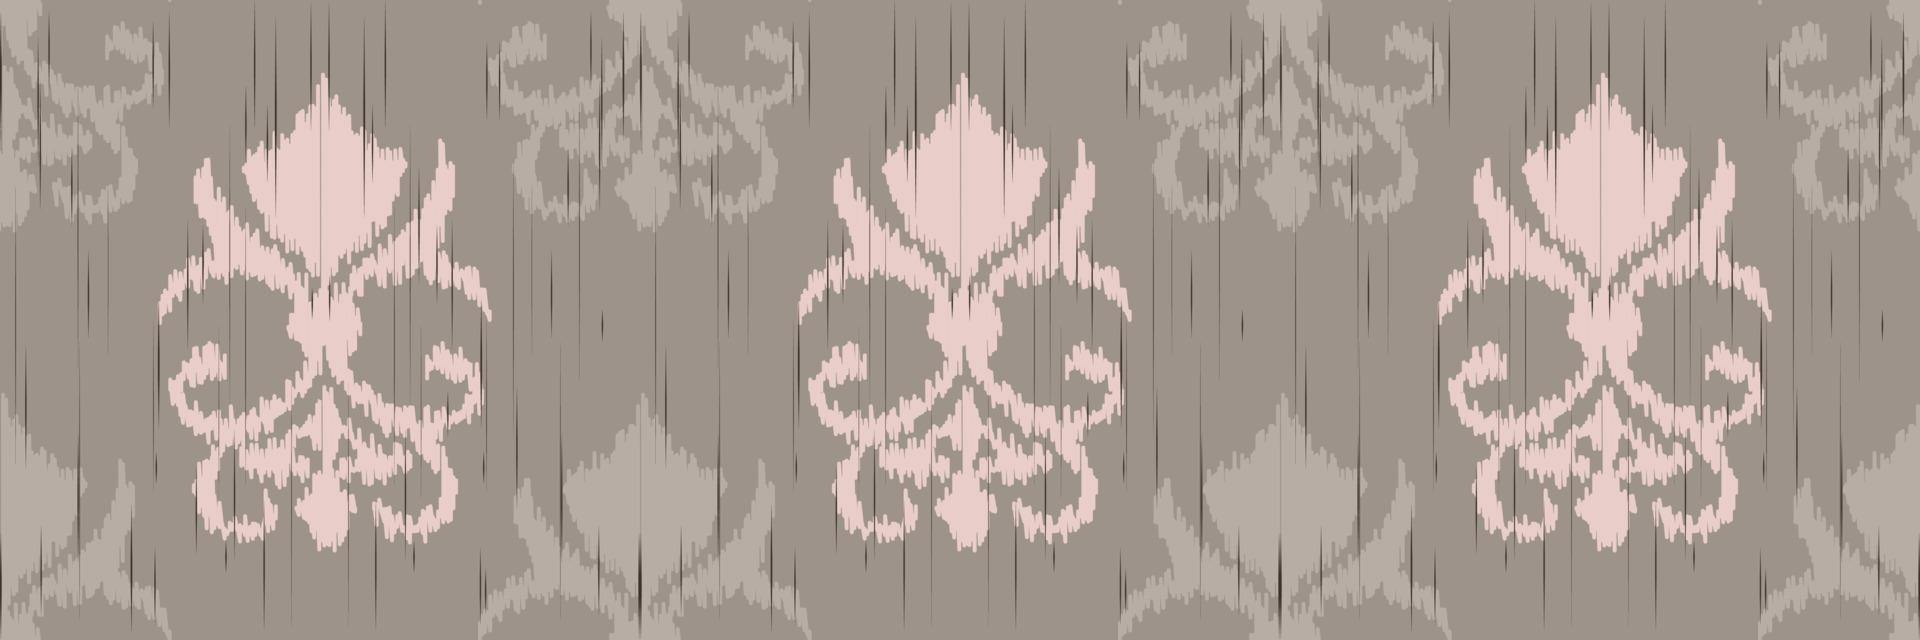 bordado escandinavo de damasco ikat, azteca tribal sin costuras ikat, motivo vectorial textil digital diseño asiático arte antiguo para estampados tela saree mughal franjas textura kurti kurtis kurtas vector